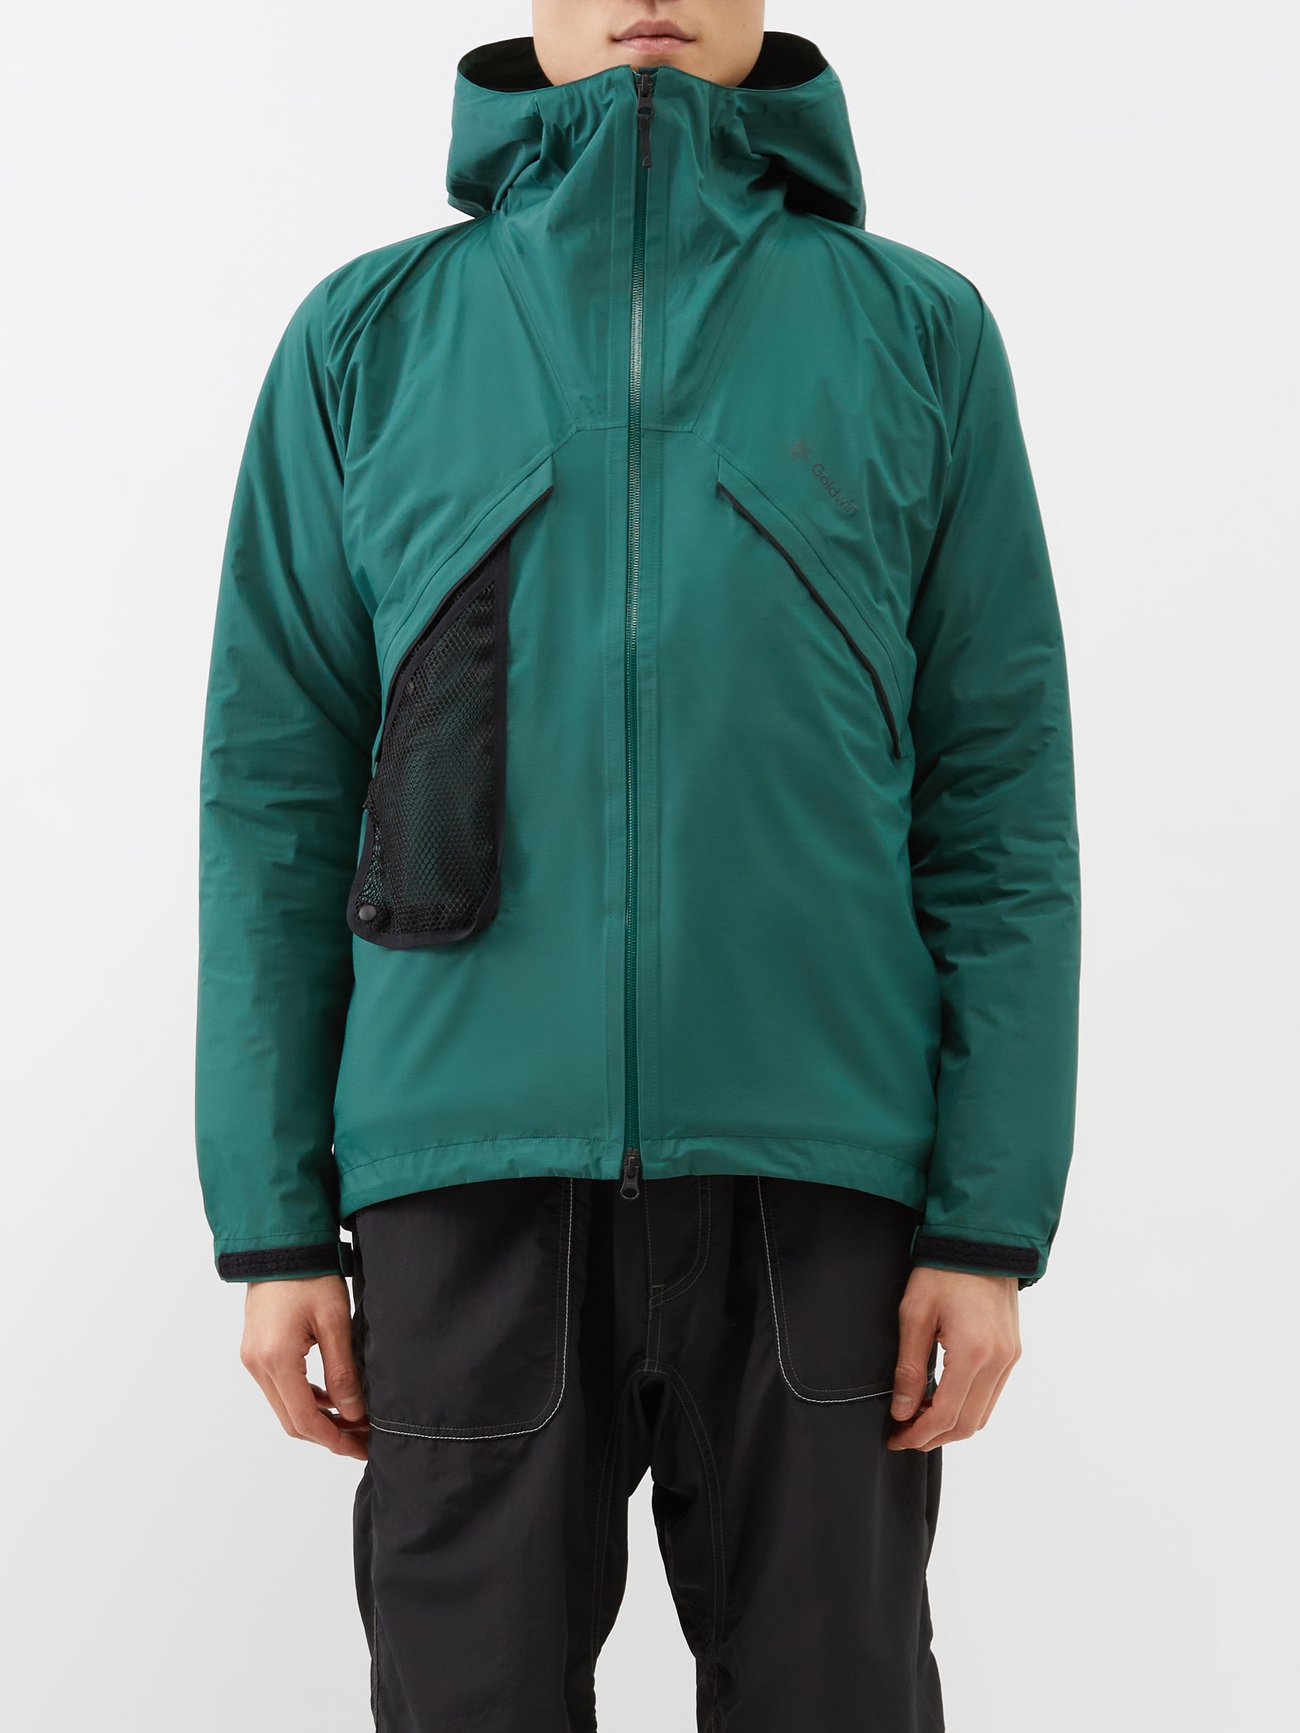 Green Pertex Shieldair technical hooded jacket | GOLDWIN ...